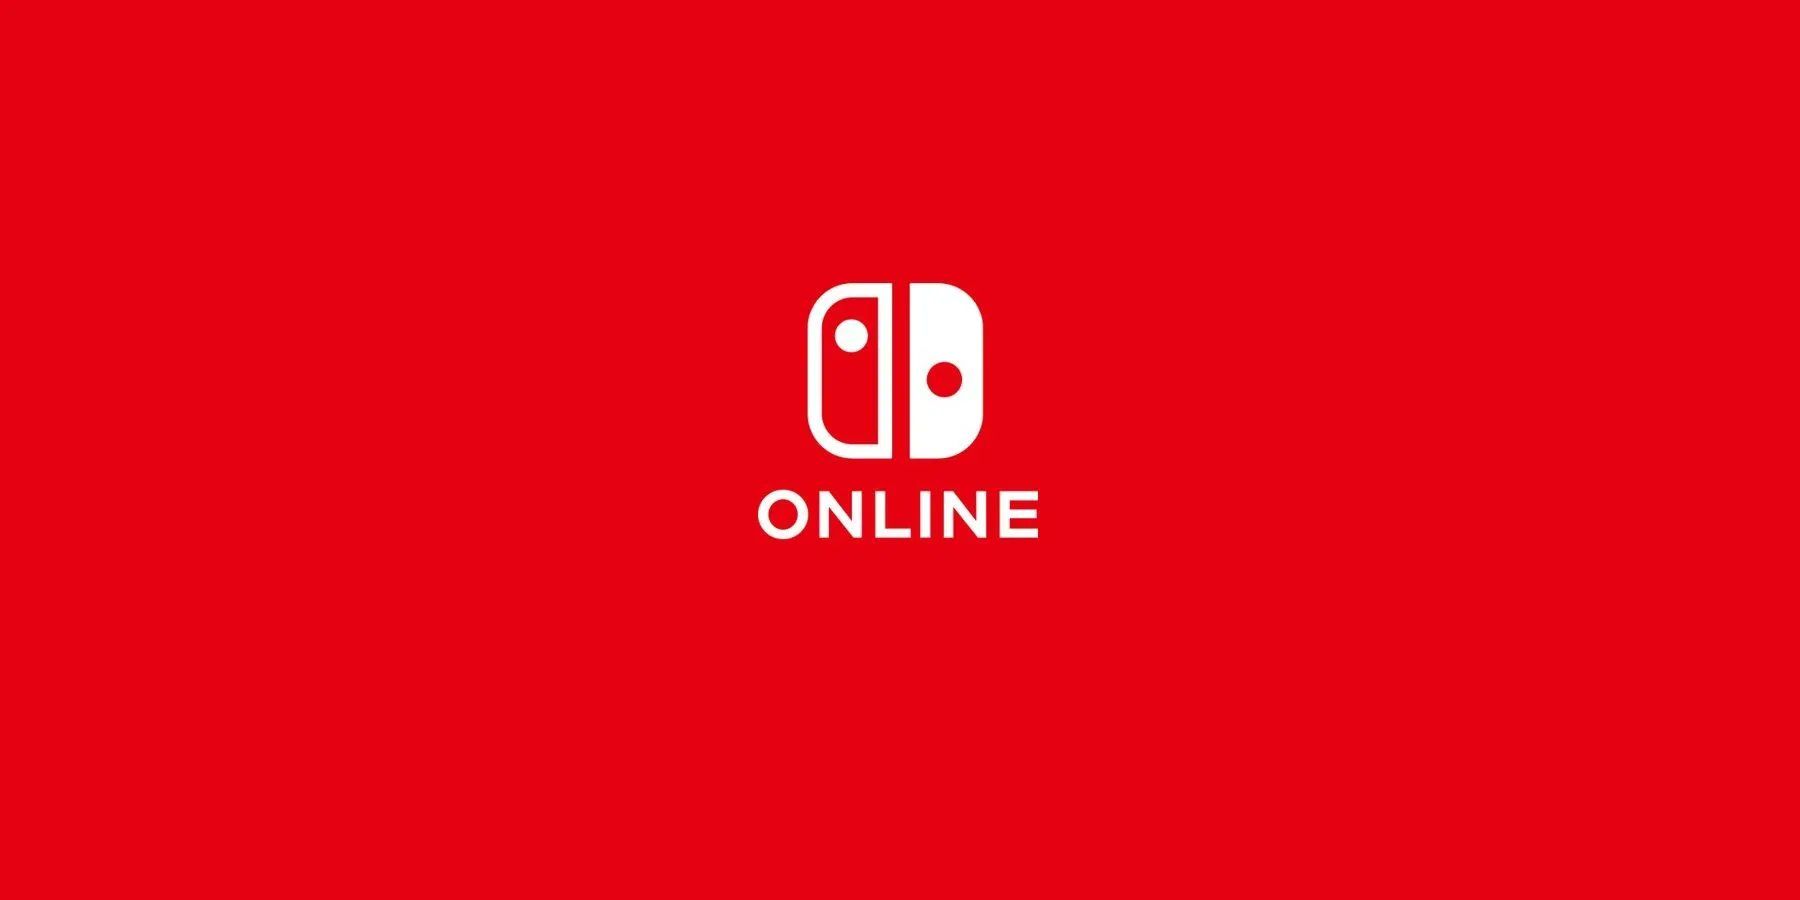 Nintendo Switch Online представляет ограниченную по времени бесплатную пробную версию игры для подписчиков